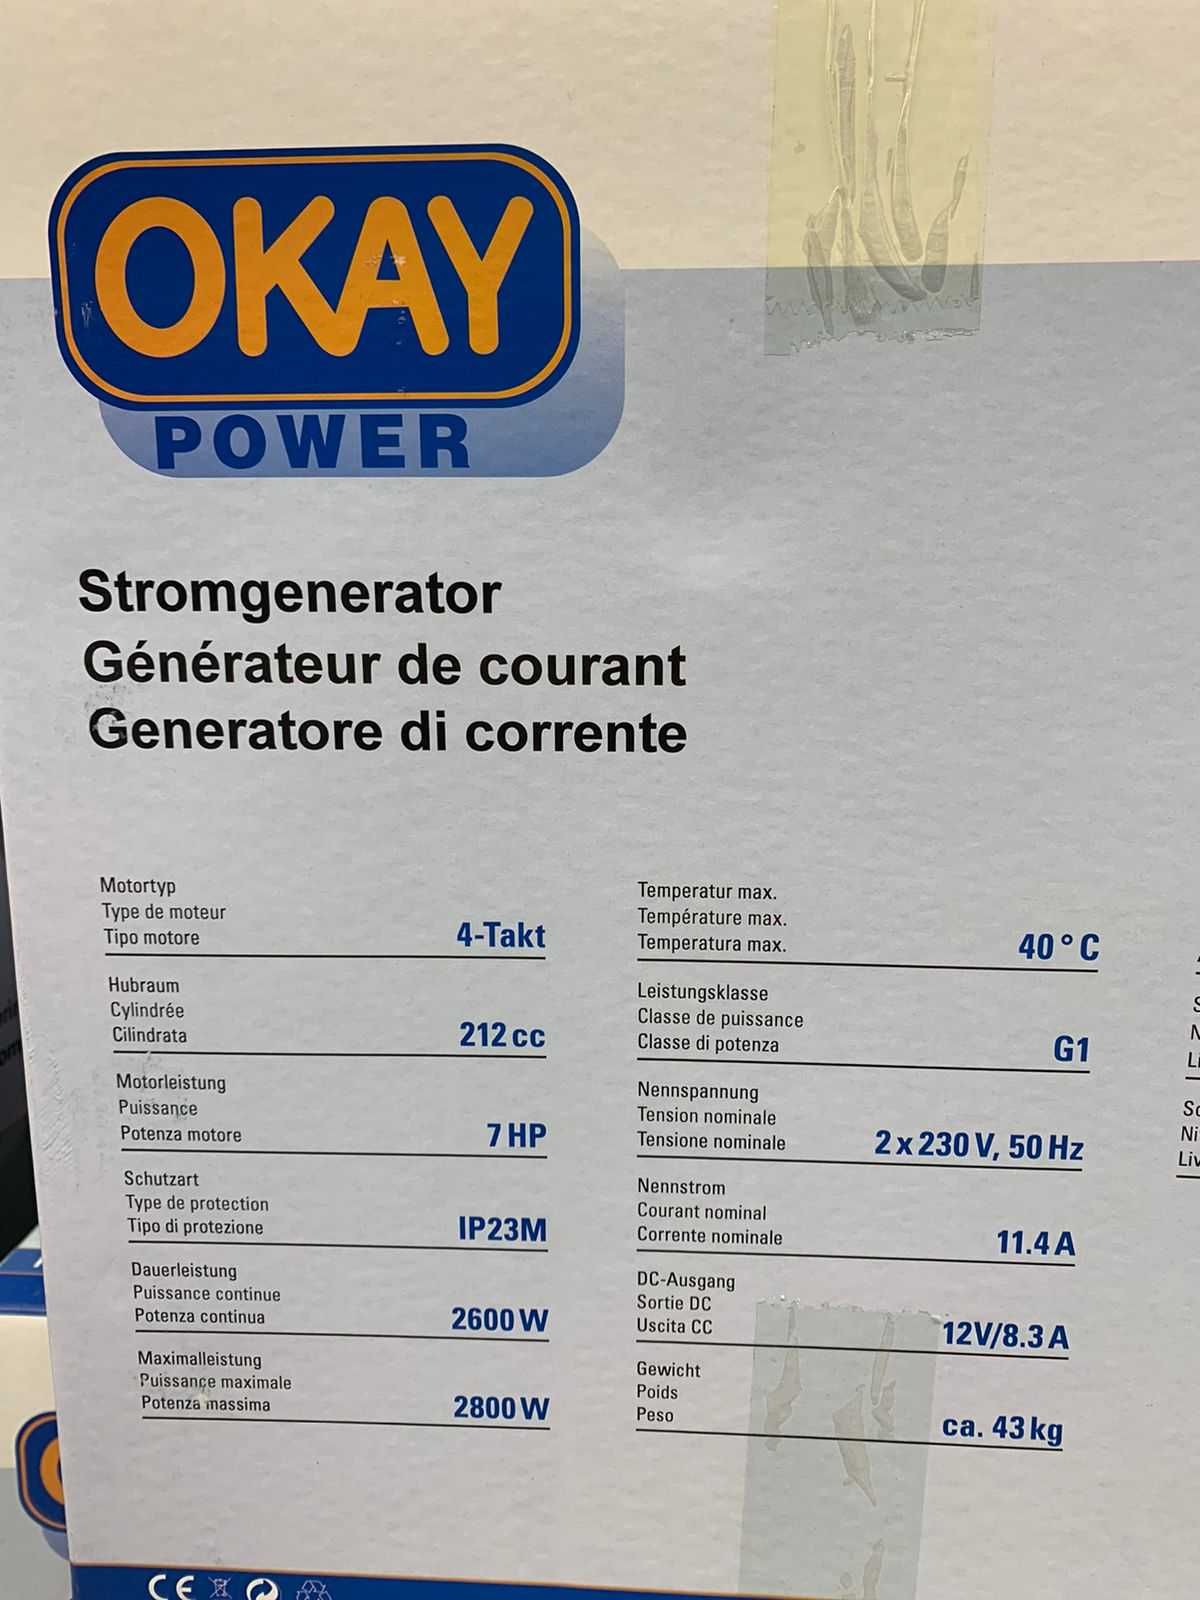 Генератор OKAY 2.8 кВт (Швейцарія) В наявності , правильний сінус